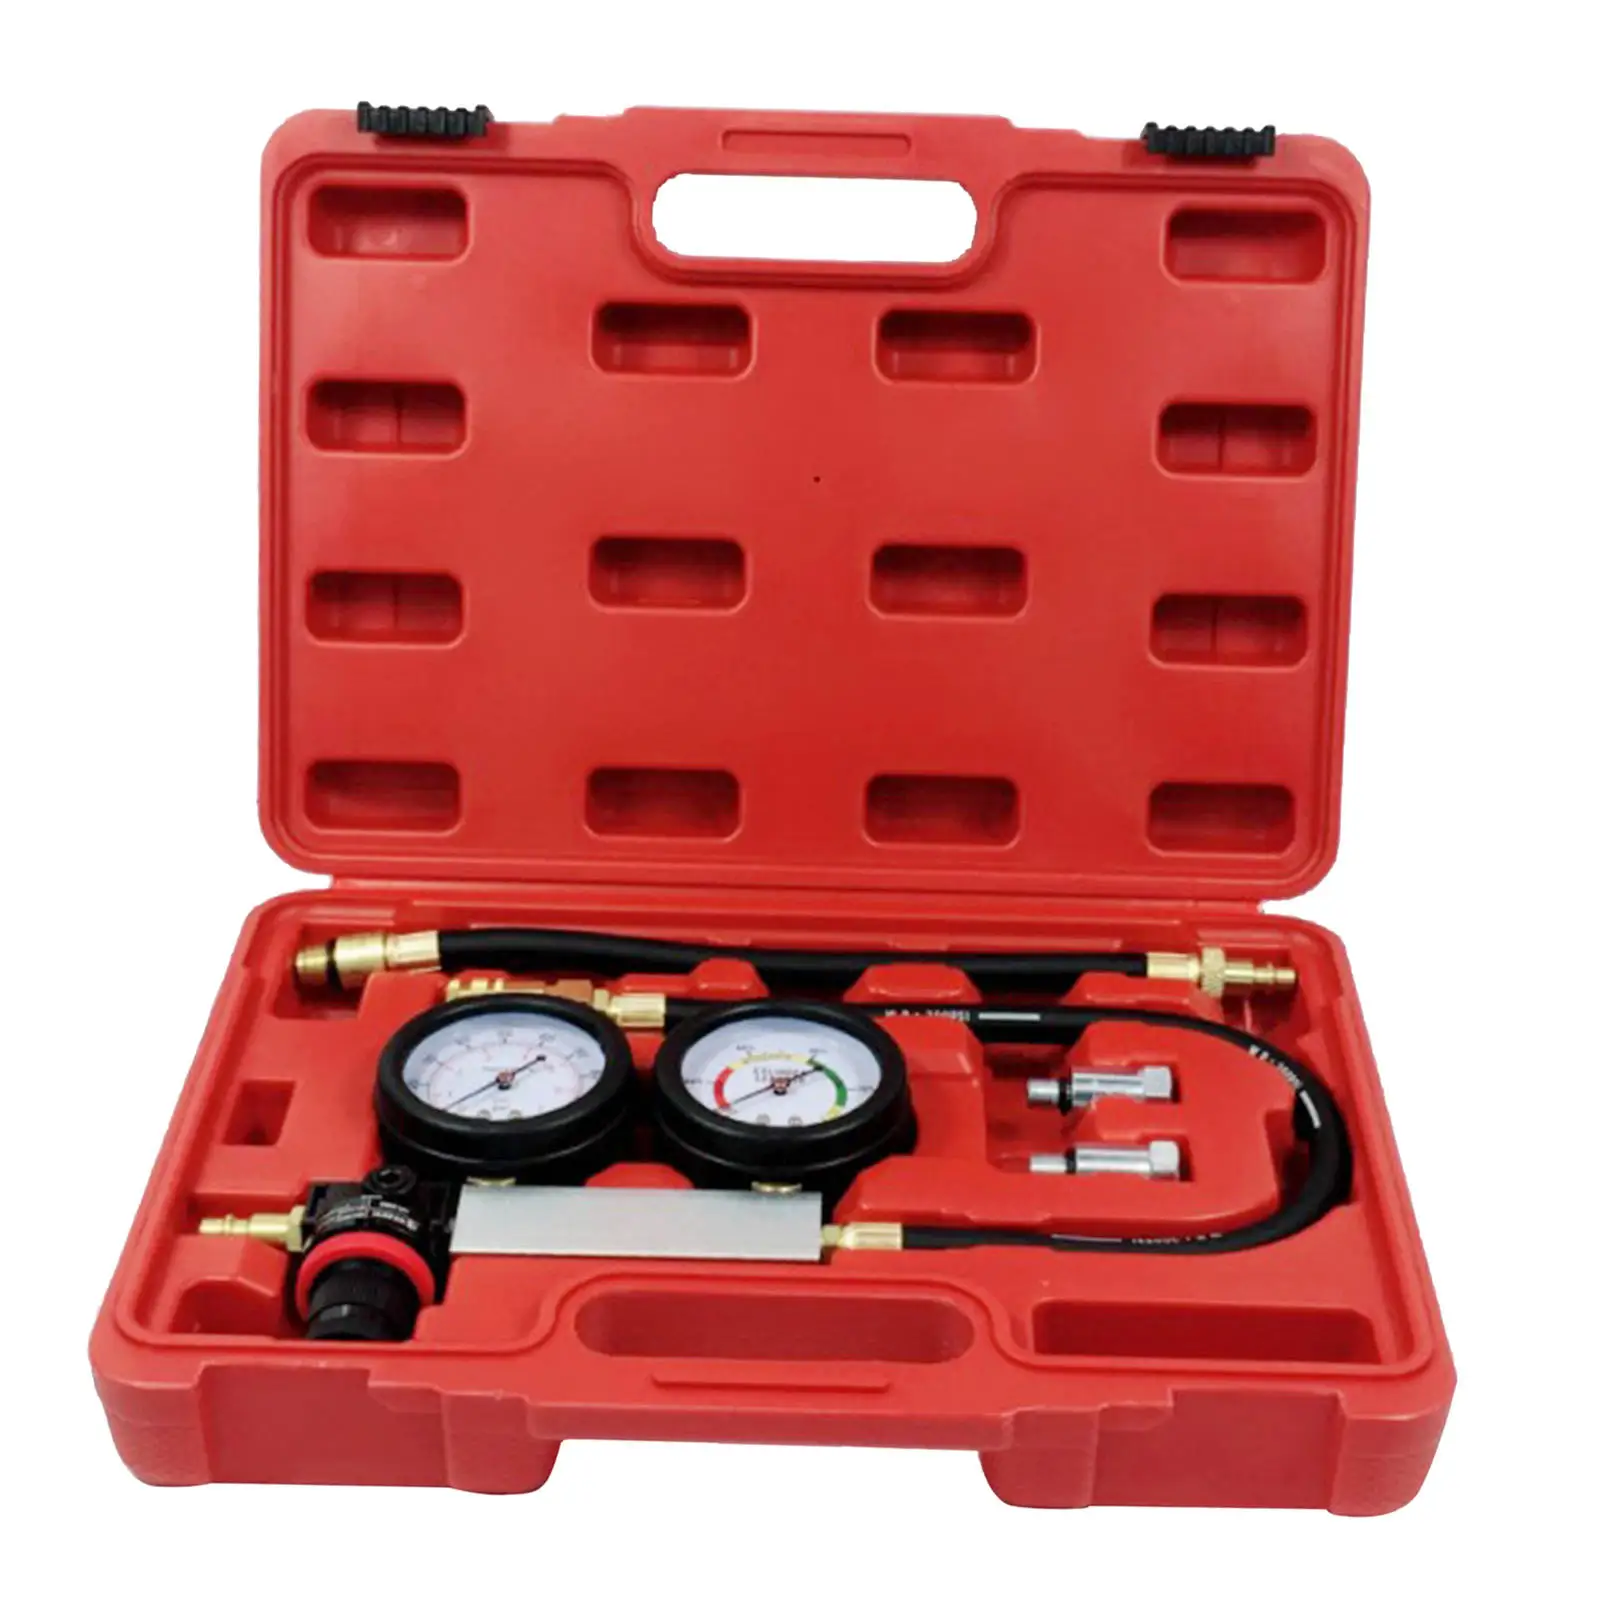 Vehicles Petrol Engine Cylinder Leak Down Tester Gauges 0-100PSI Compression Leakage Detector Kits + Case Diagnostics Tool